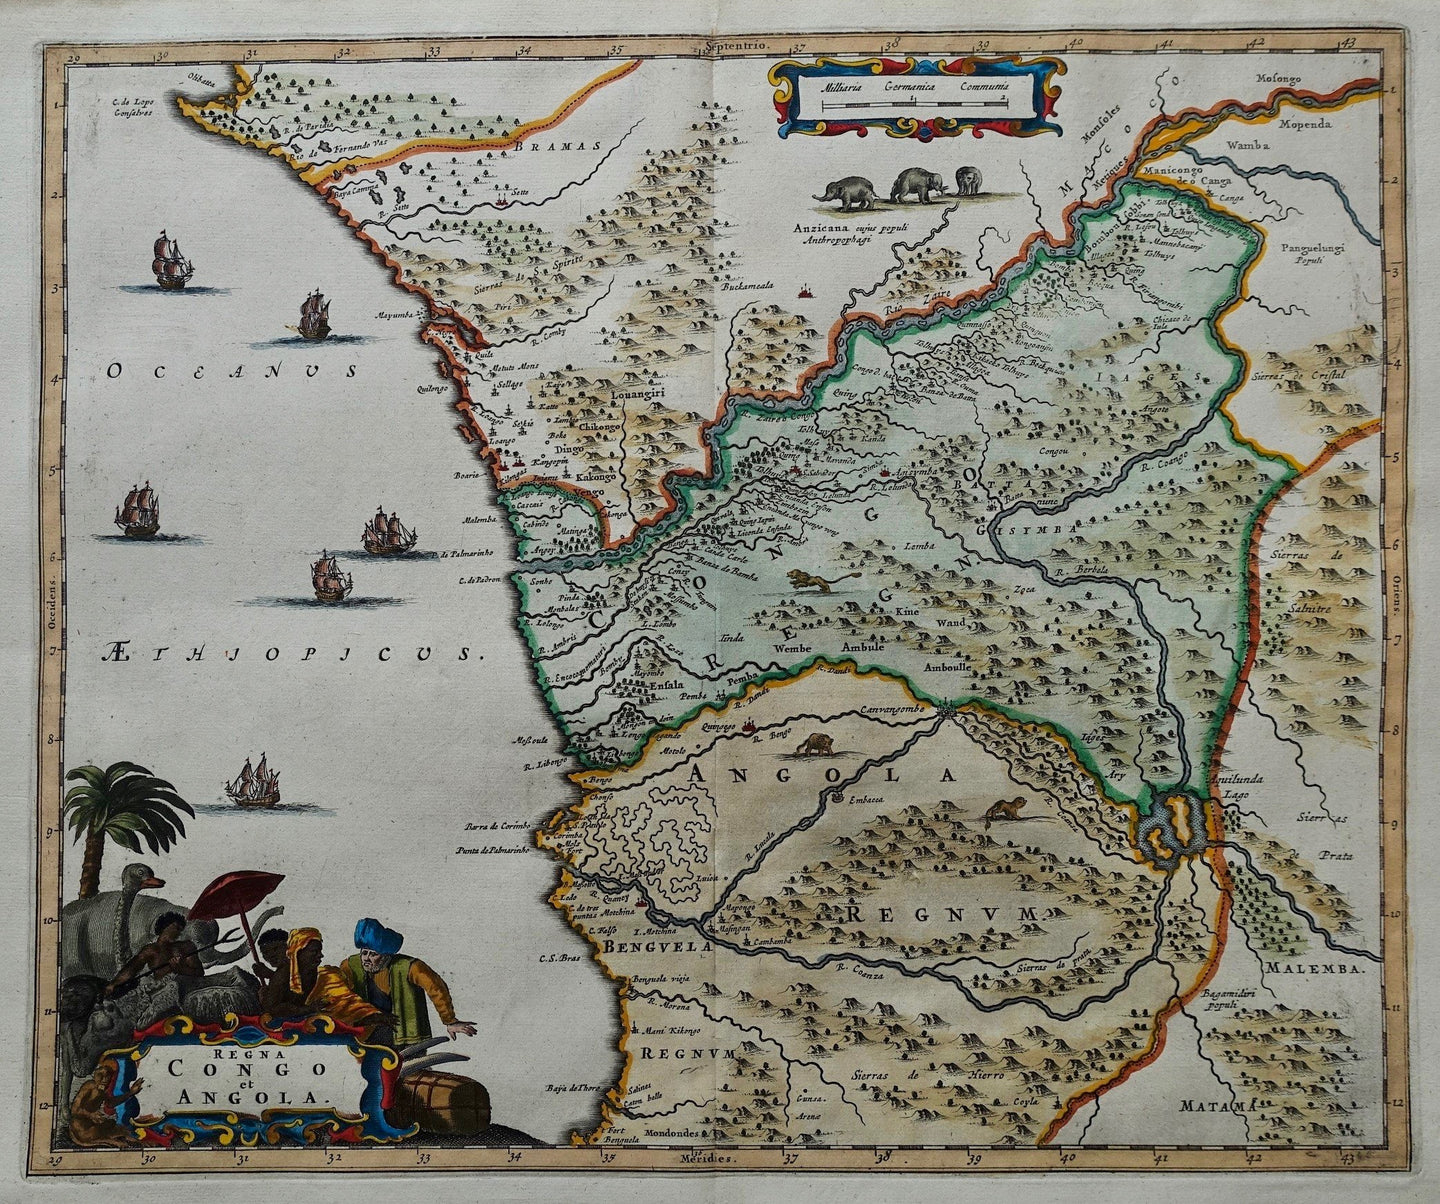 Angola Congo - O Dapper / J van Meurs - 1676